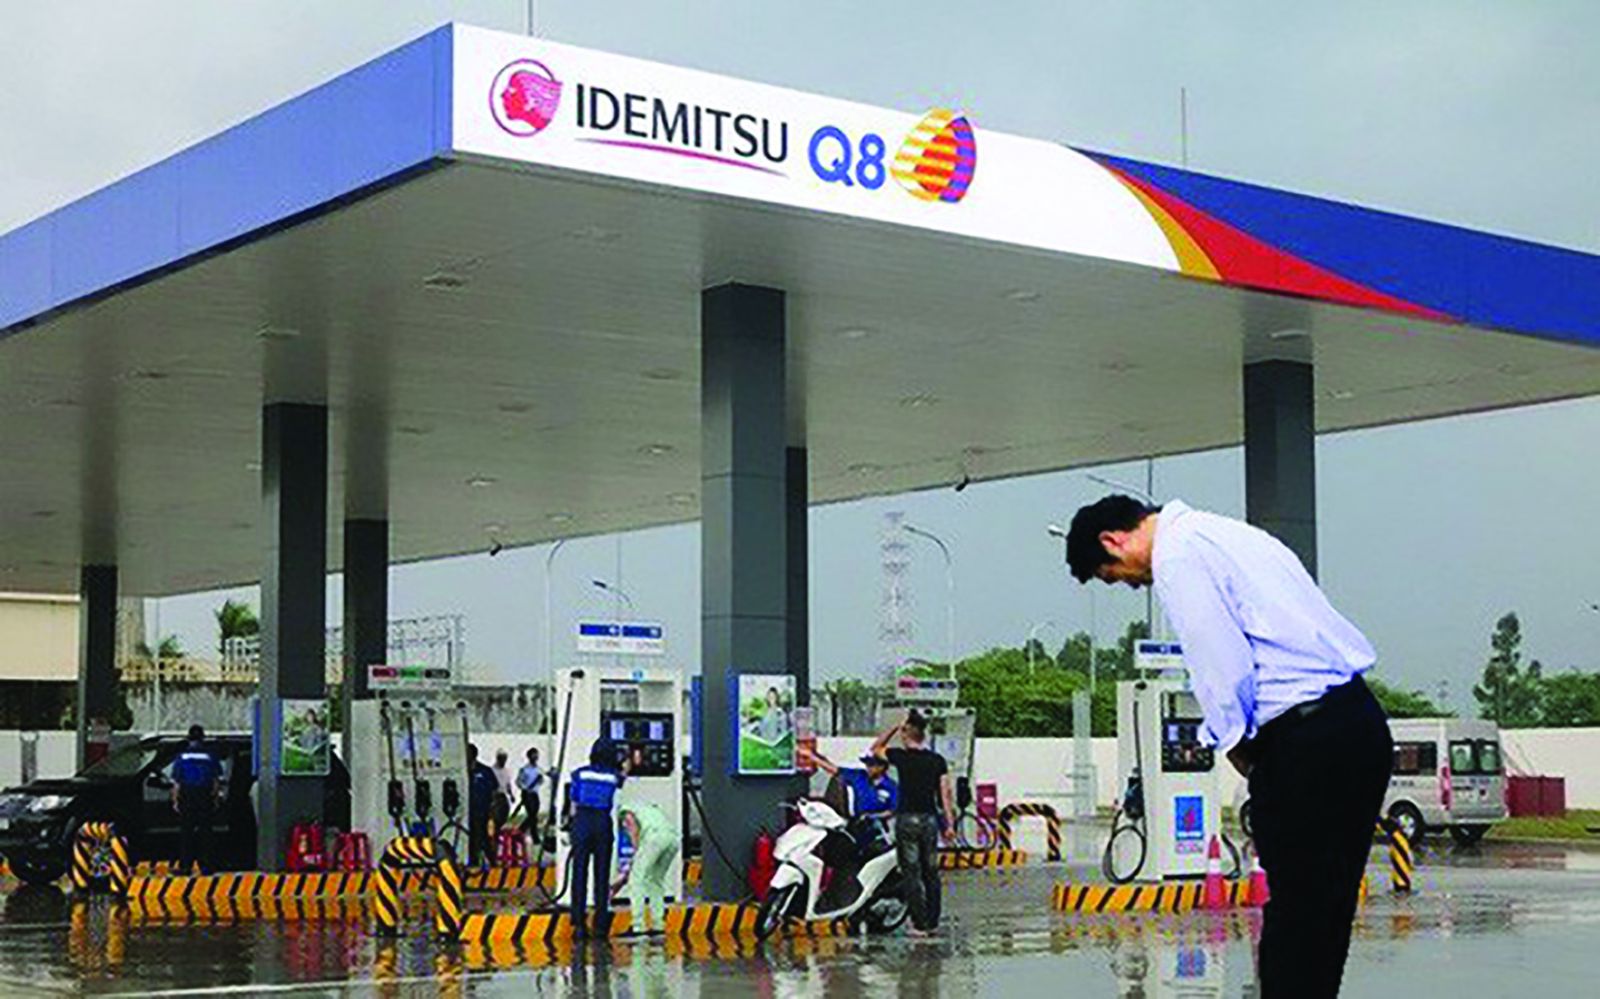 p/Công ty TNHH xăng dầu Idemitsu Q8 là doanh nghiệp 100% vốn đầu tư nước ngoài đầu tiên được cấp phép tham gia thị trường bán lẻ xăng dầu tại Việt Nam.